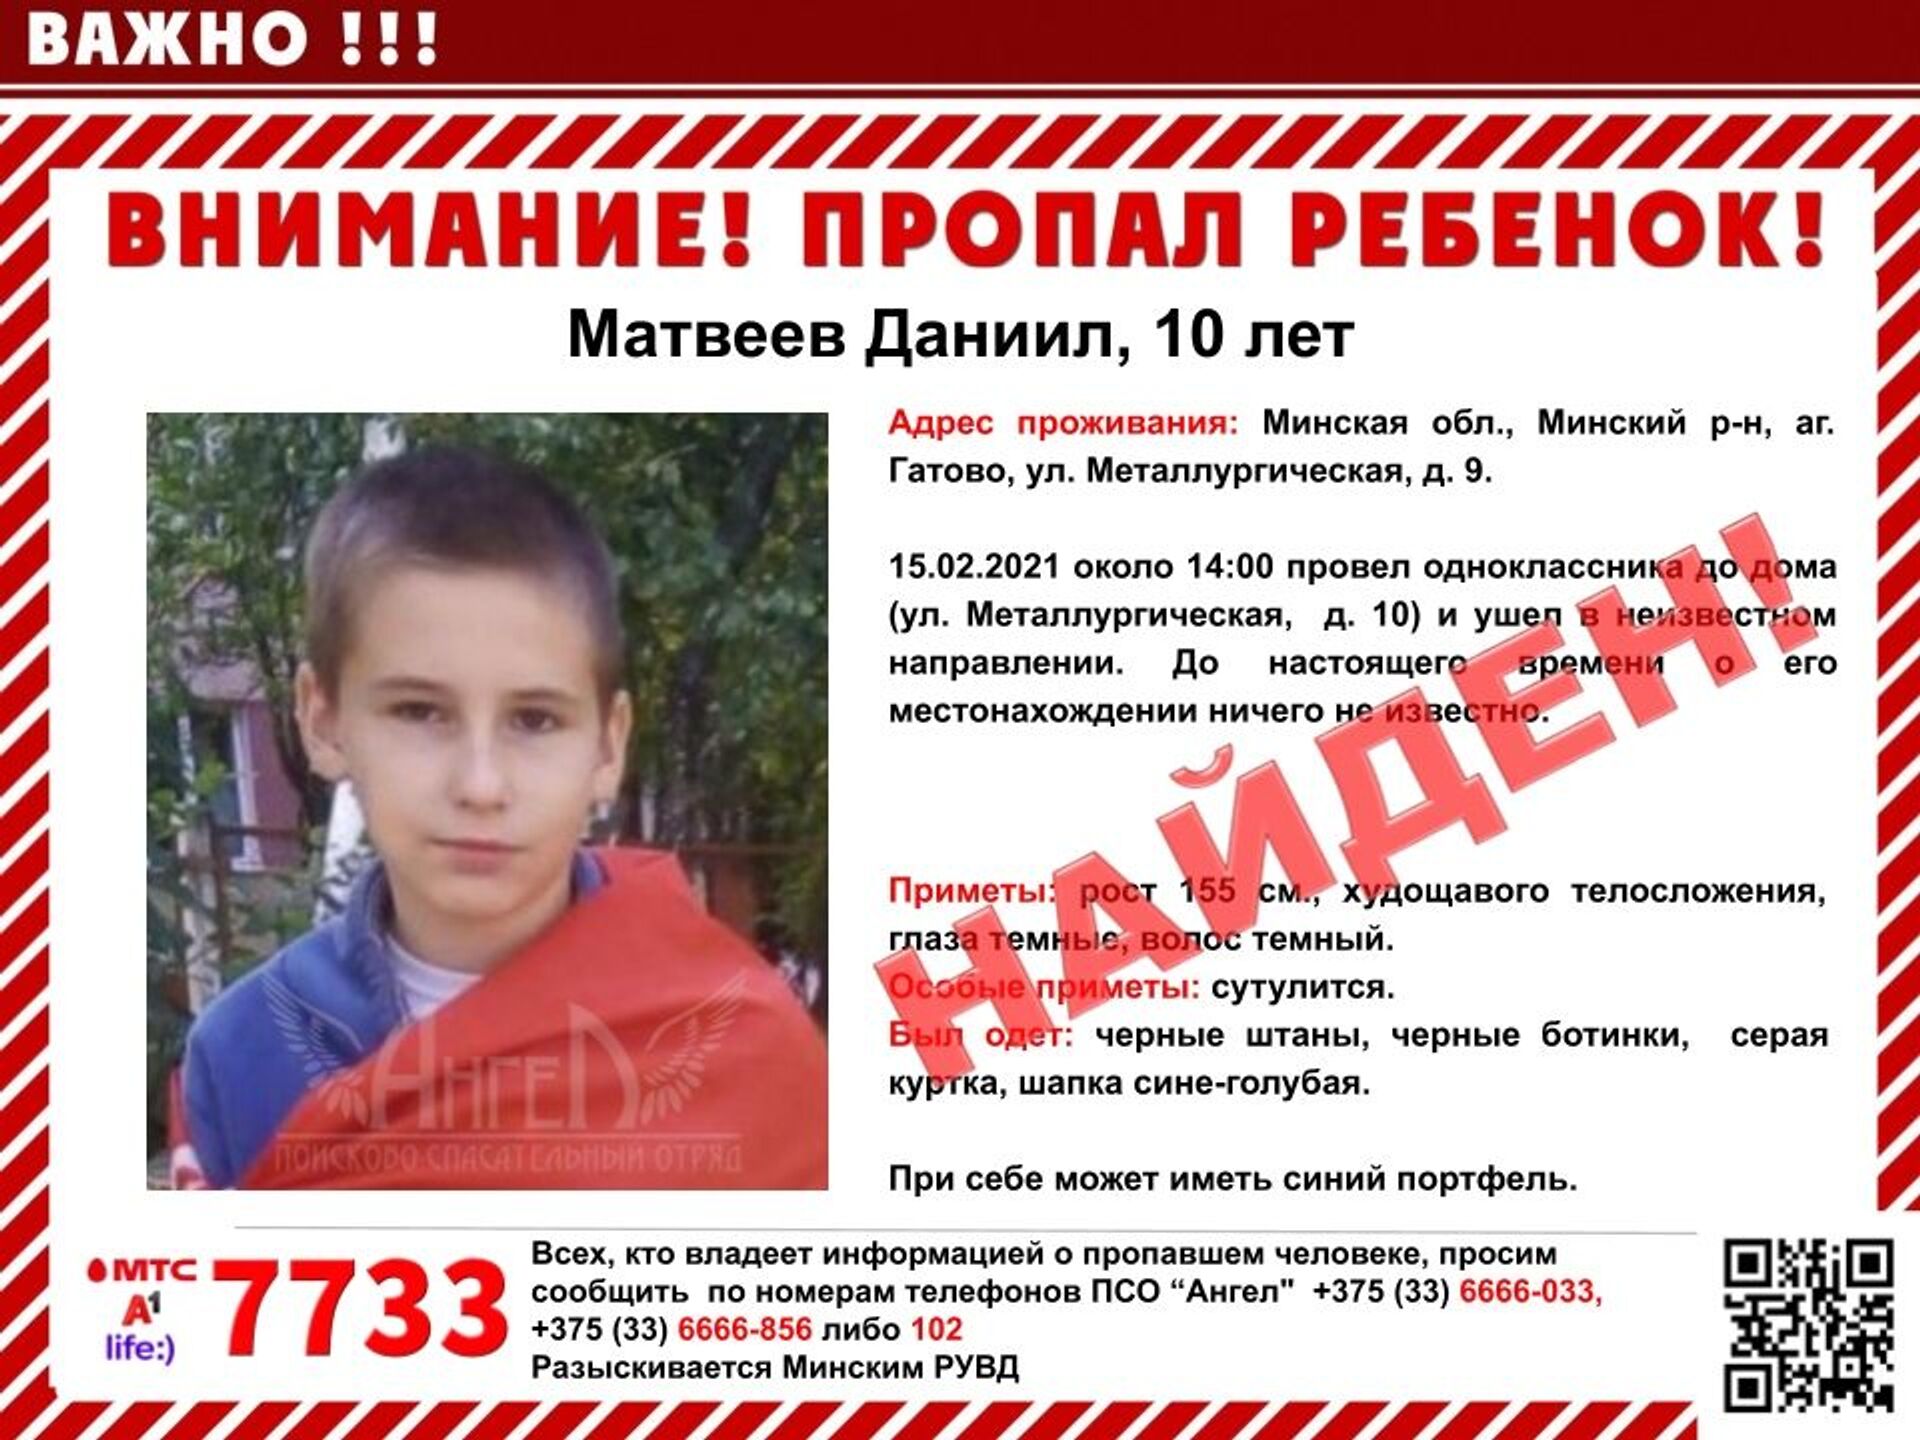 Трогательно: пропавшего мальчика нашли возле дома, где он раньше жил - Sputnik Беларусь, 1920, 16.02.2021